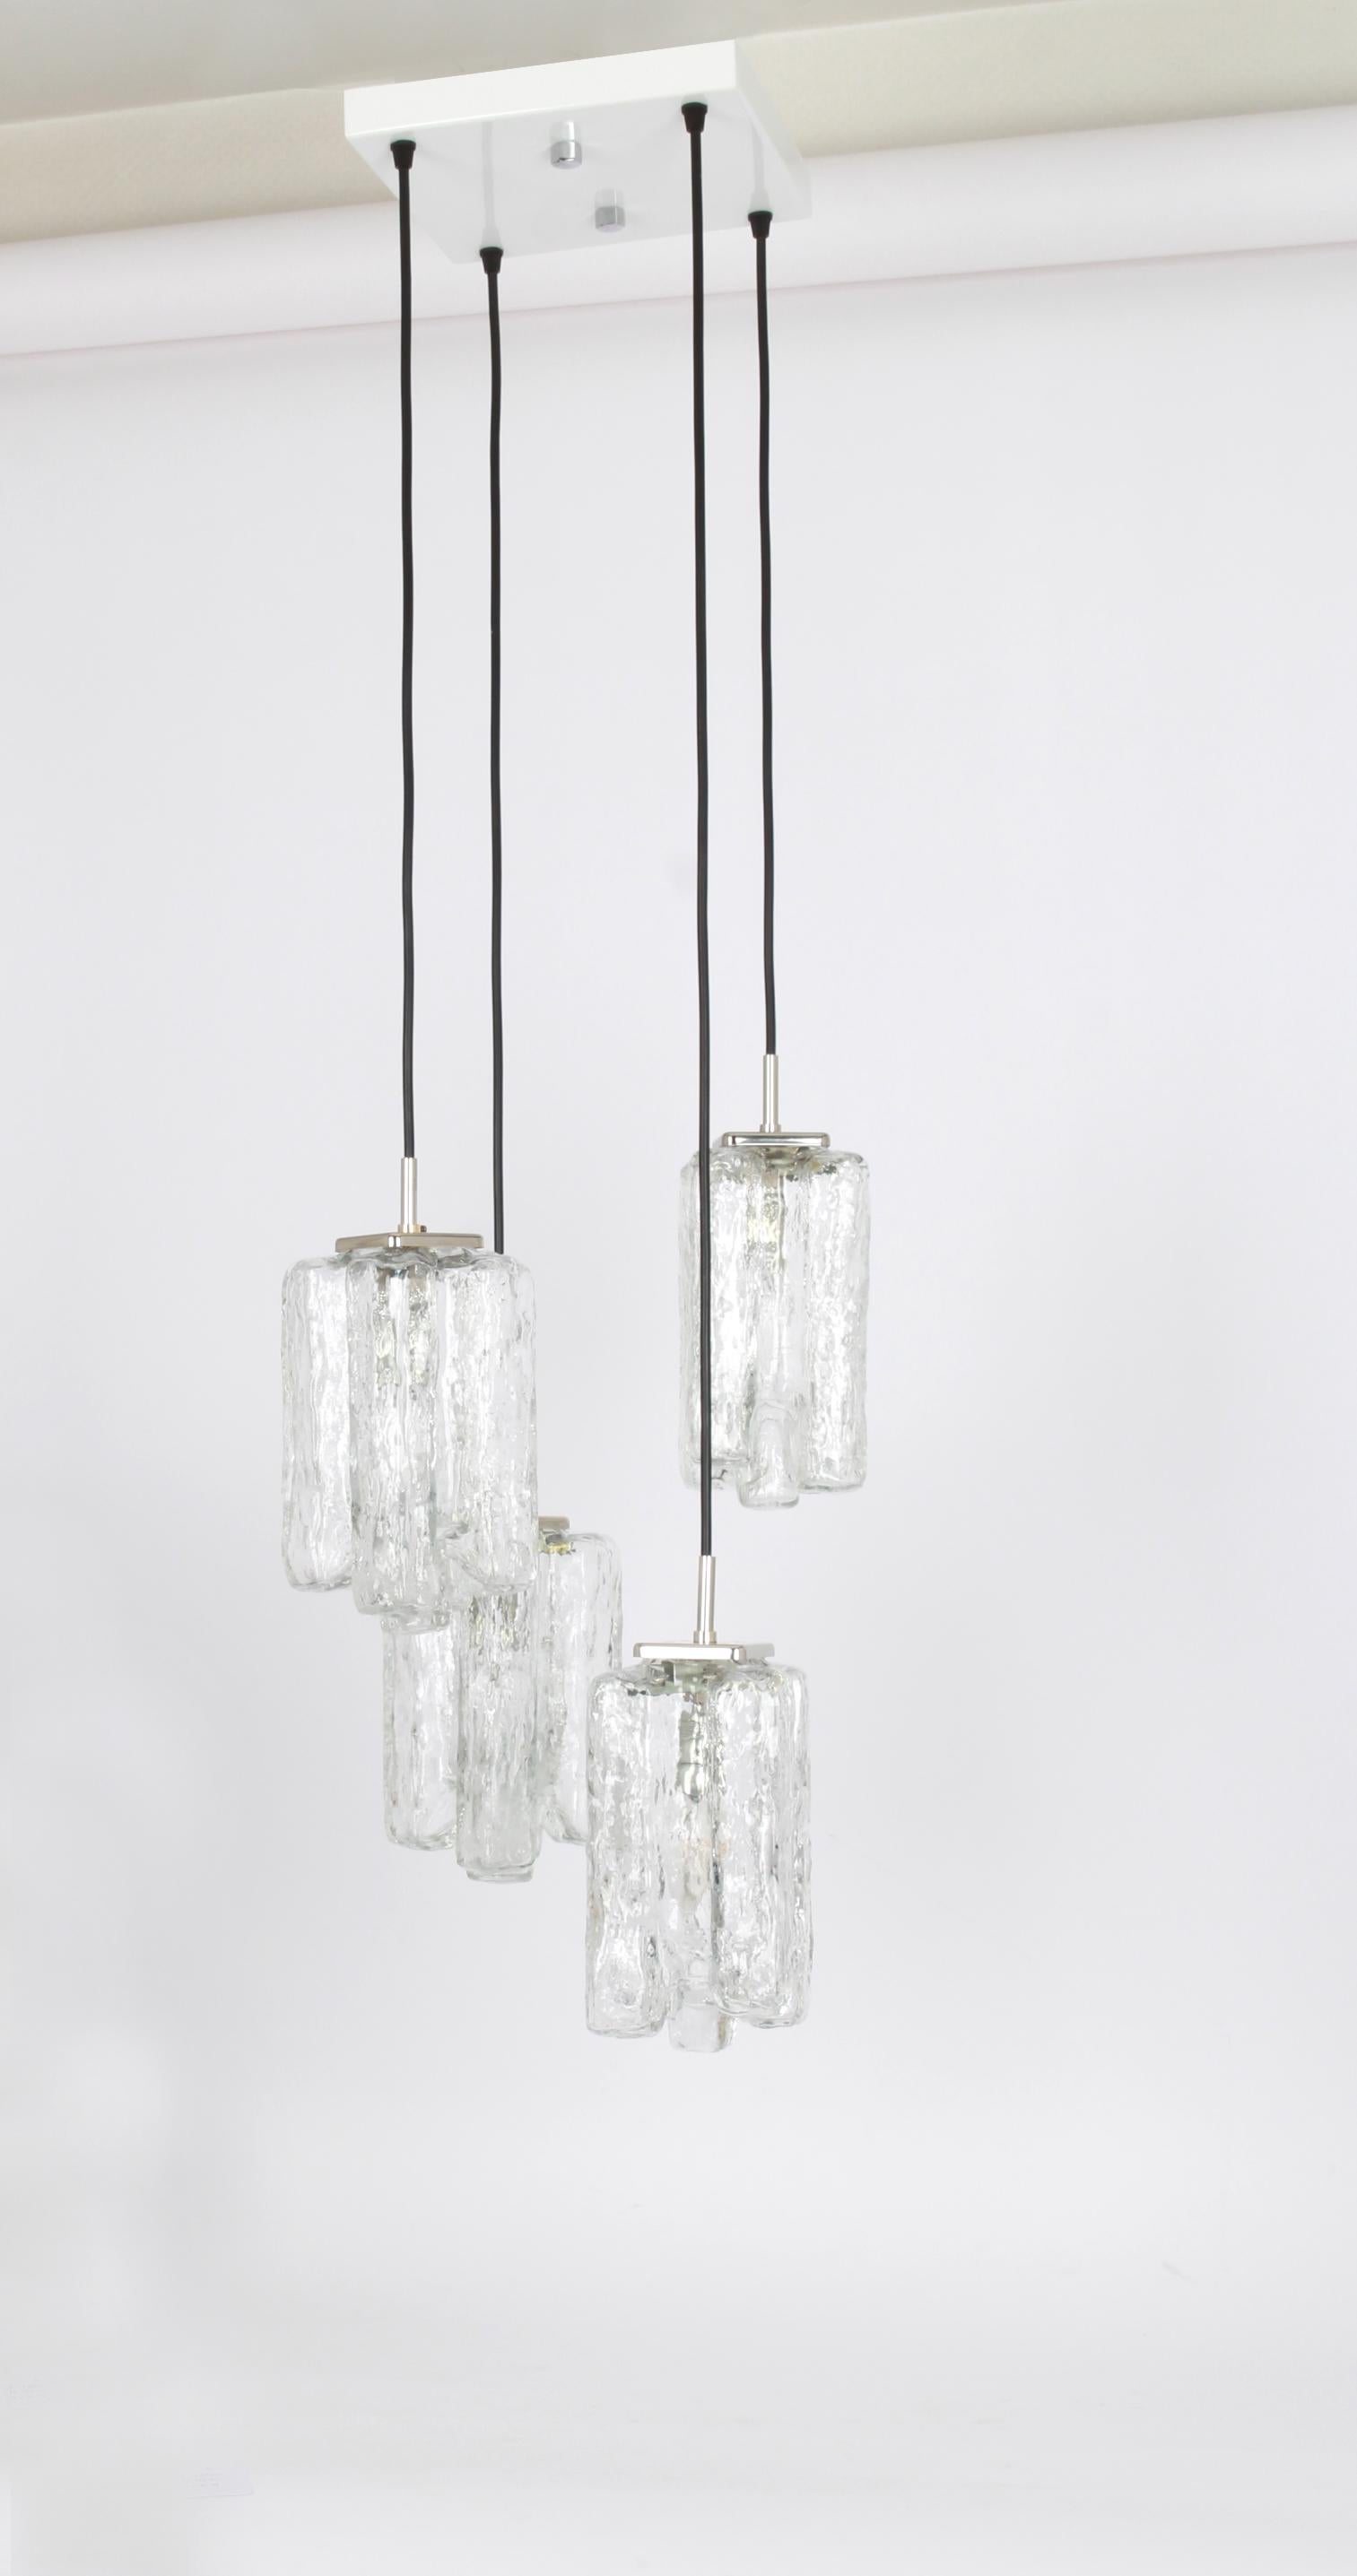 Un lustre spécial en cascade conçu par Kalmar, fabriqué en Autriche, vers les années 1970, avec 4 verres de Murano texturés.
Effet lumineux étonnant.
Douilles : 4 x E14 petite ampoule. (chacune 40 W max).
Les ampoules ne sont pas incluses. Il est